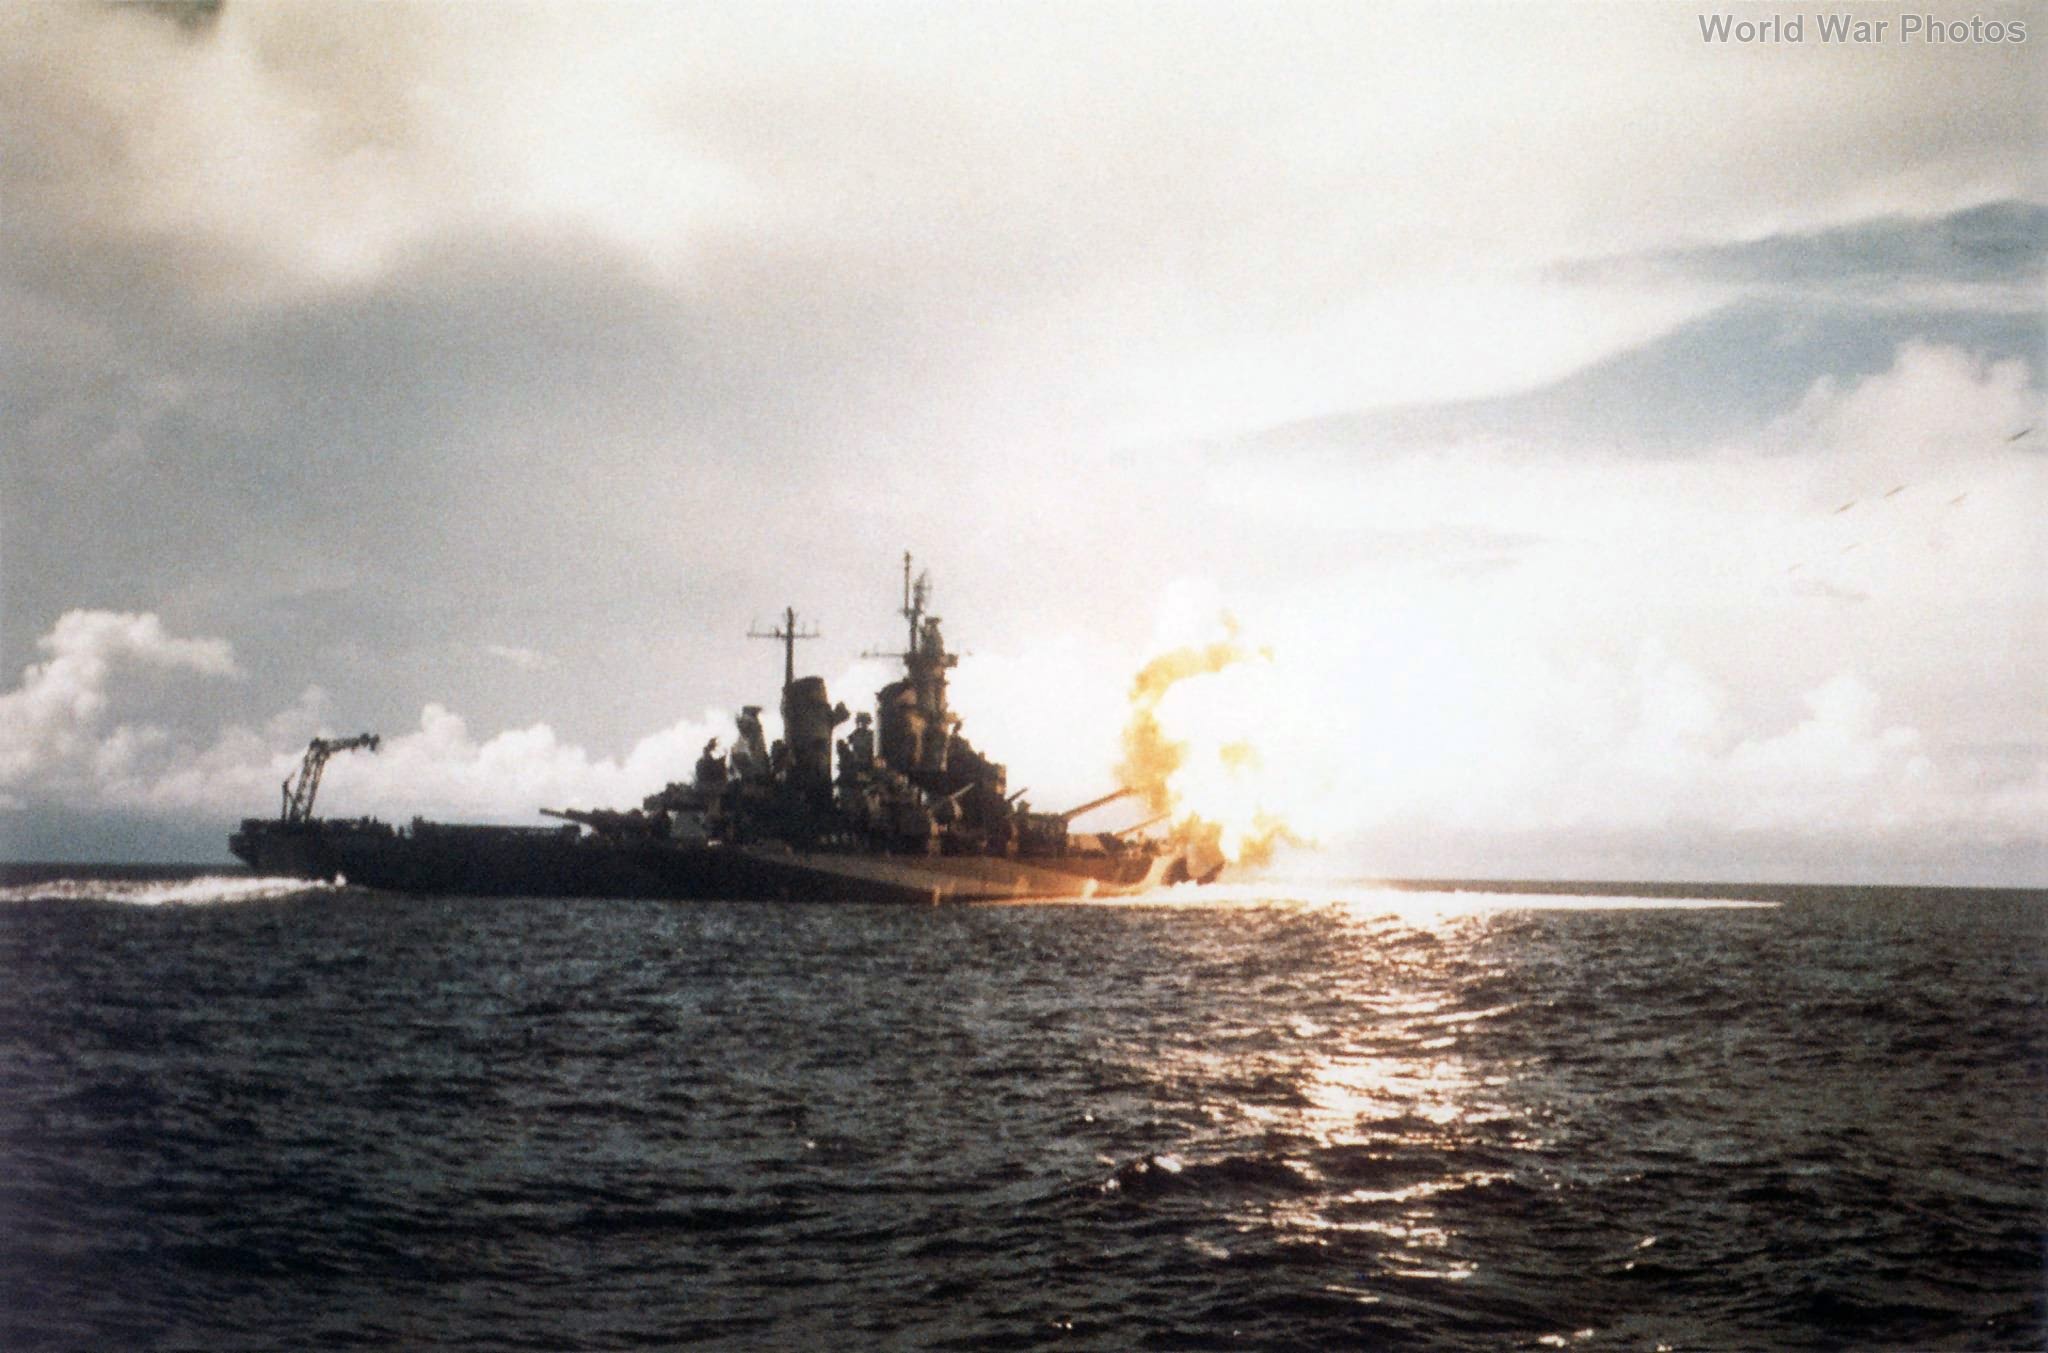 USS Missouri firing